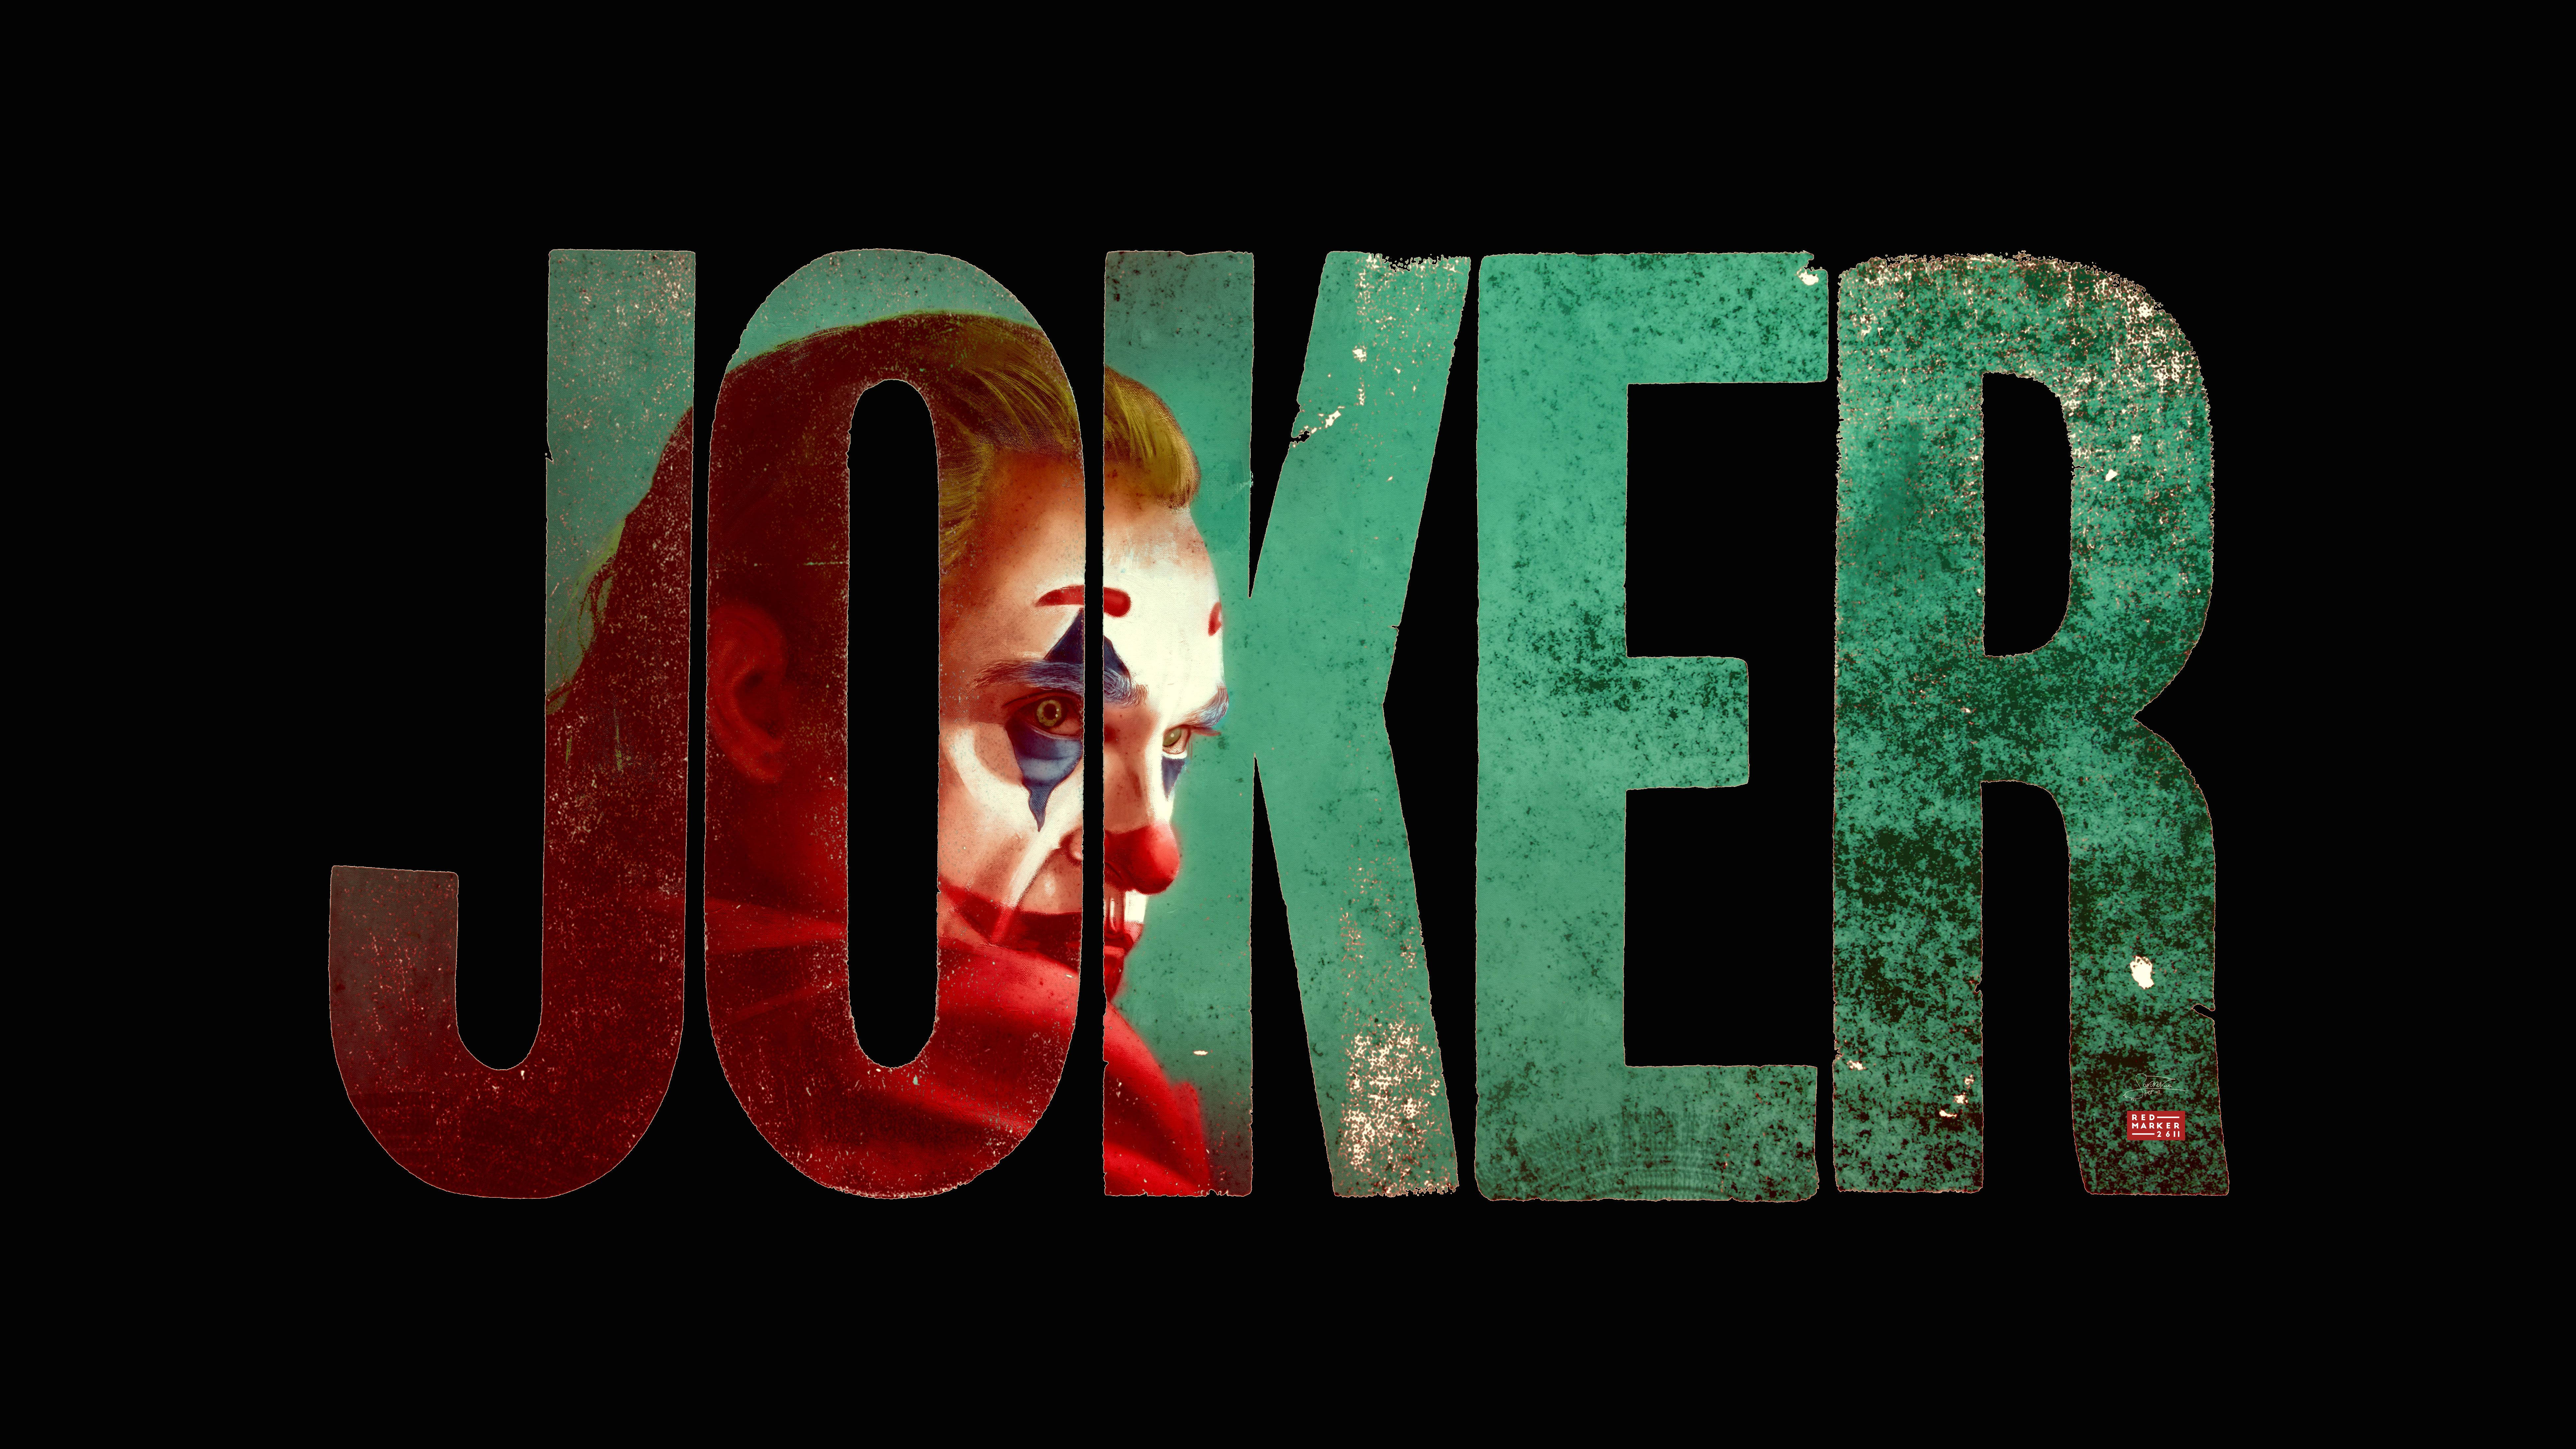 Joker 2019 Word Art Background